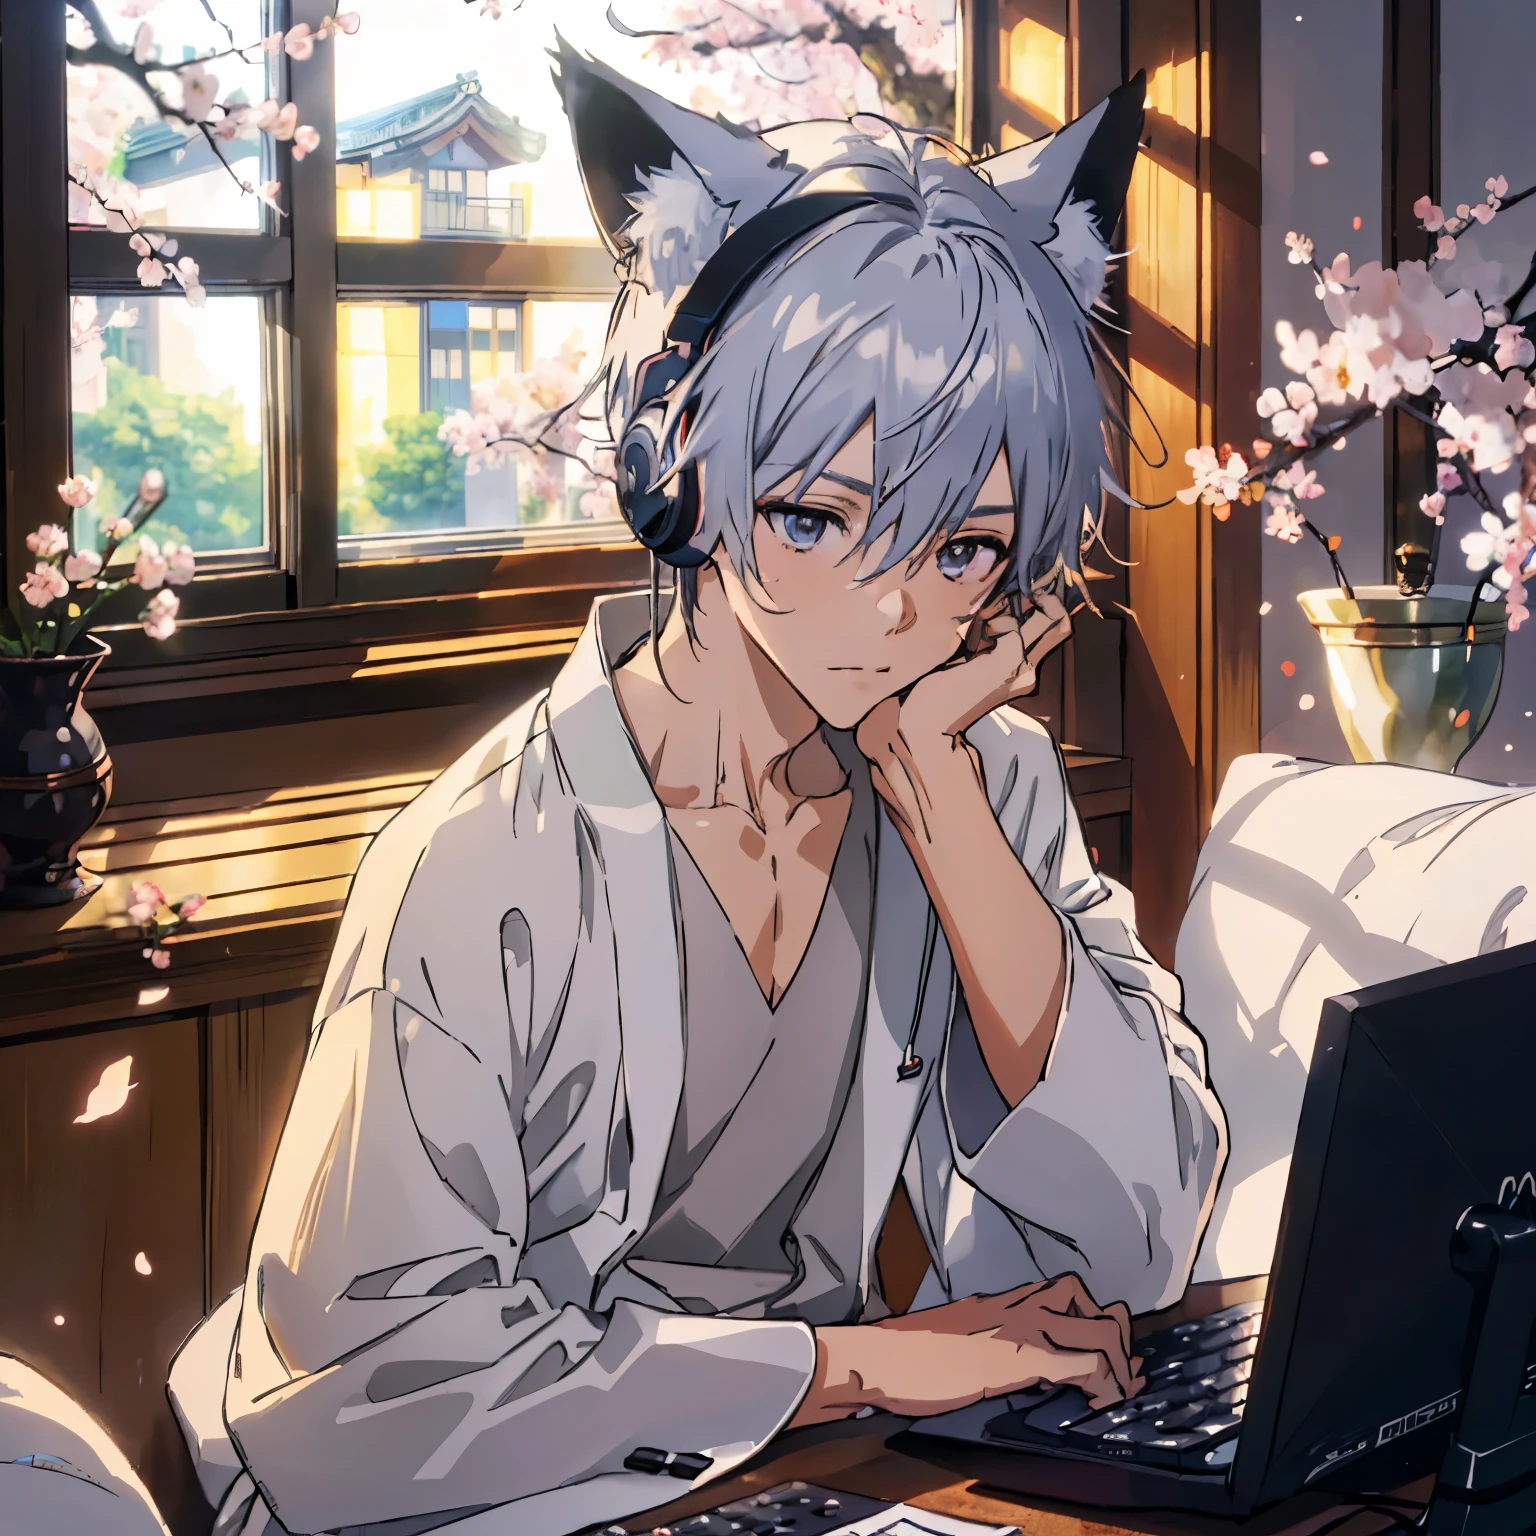 ((höchste Qualität)), ((Meisterwerk)), (vertraut sein mit),、Morgen、Ein Junge lernt in seinem Zimmer und hört dabei mit Kopfhörern Radio、Kimono、silbernes Haar、Fuchsschwanz、Fuchsohren、warmes Licht、Vor dem Zimmer blühen Kirschblüten、Öffnen des Computers、Japanischer Anime-Stil